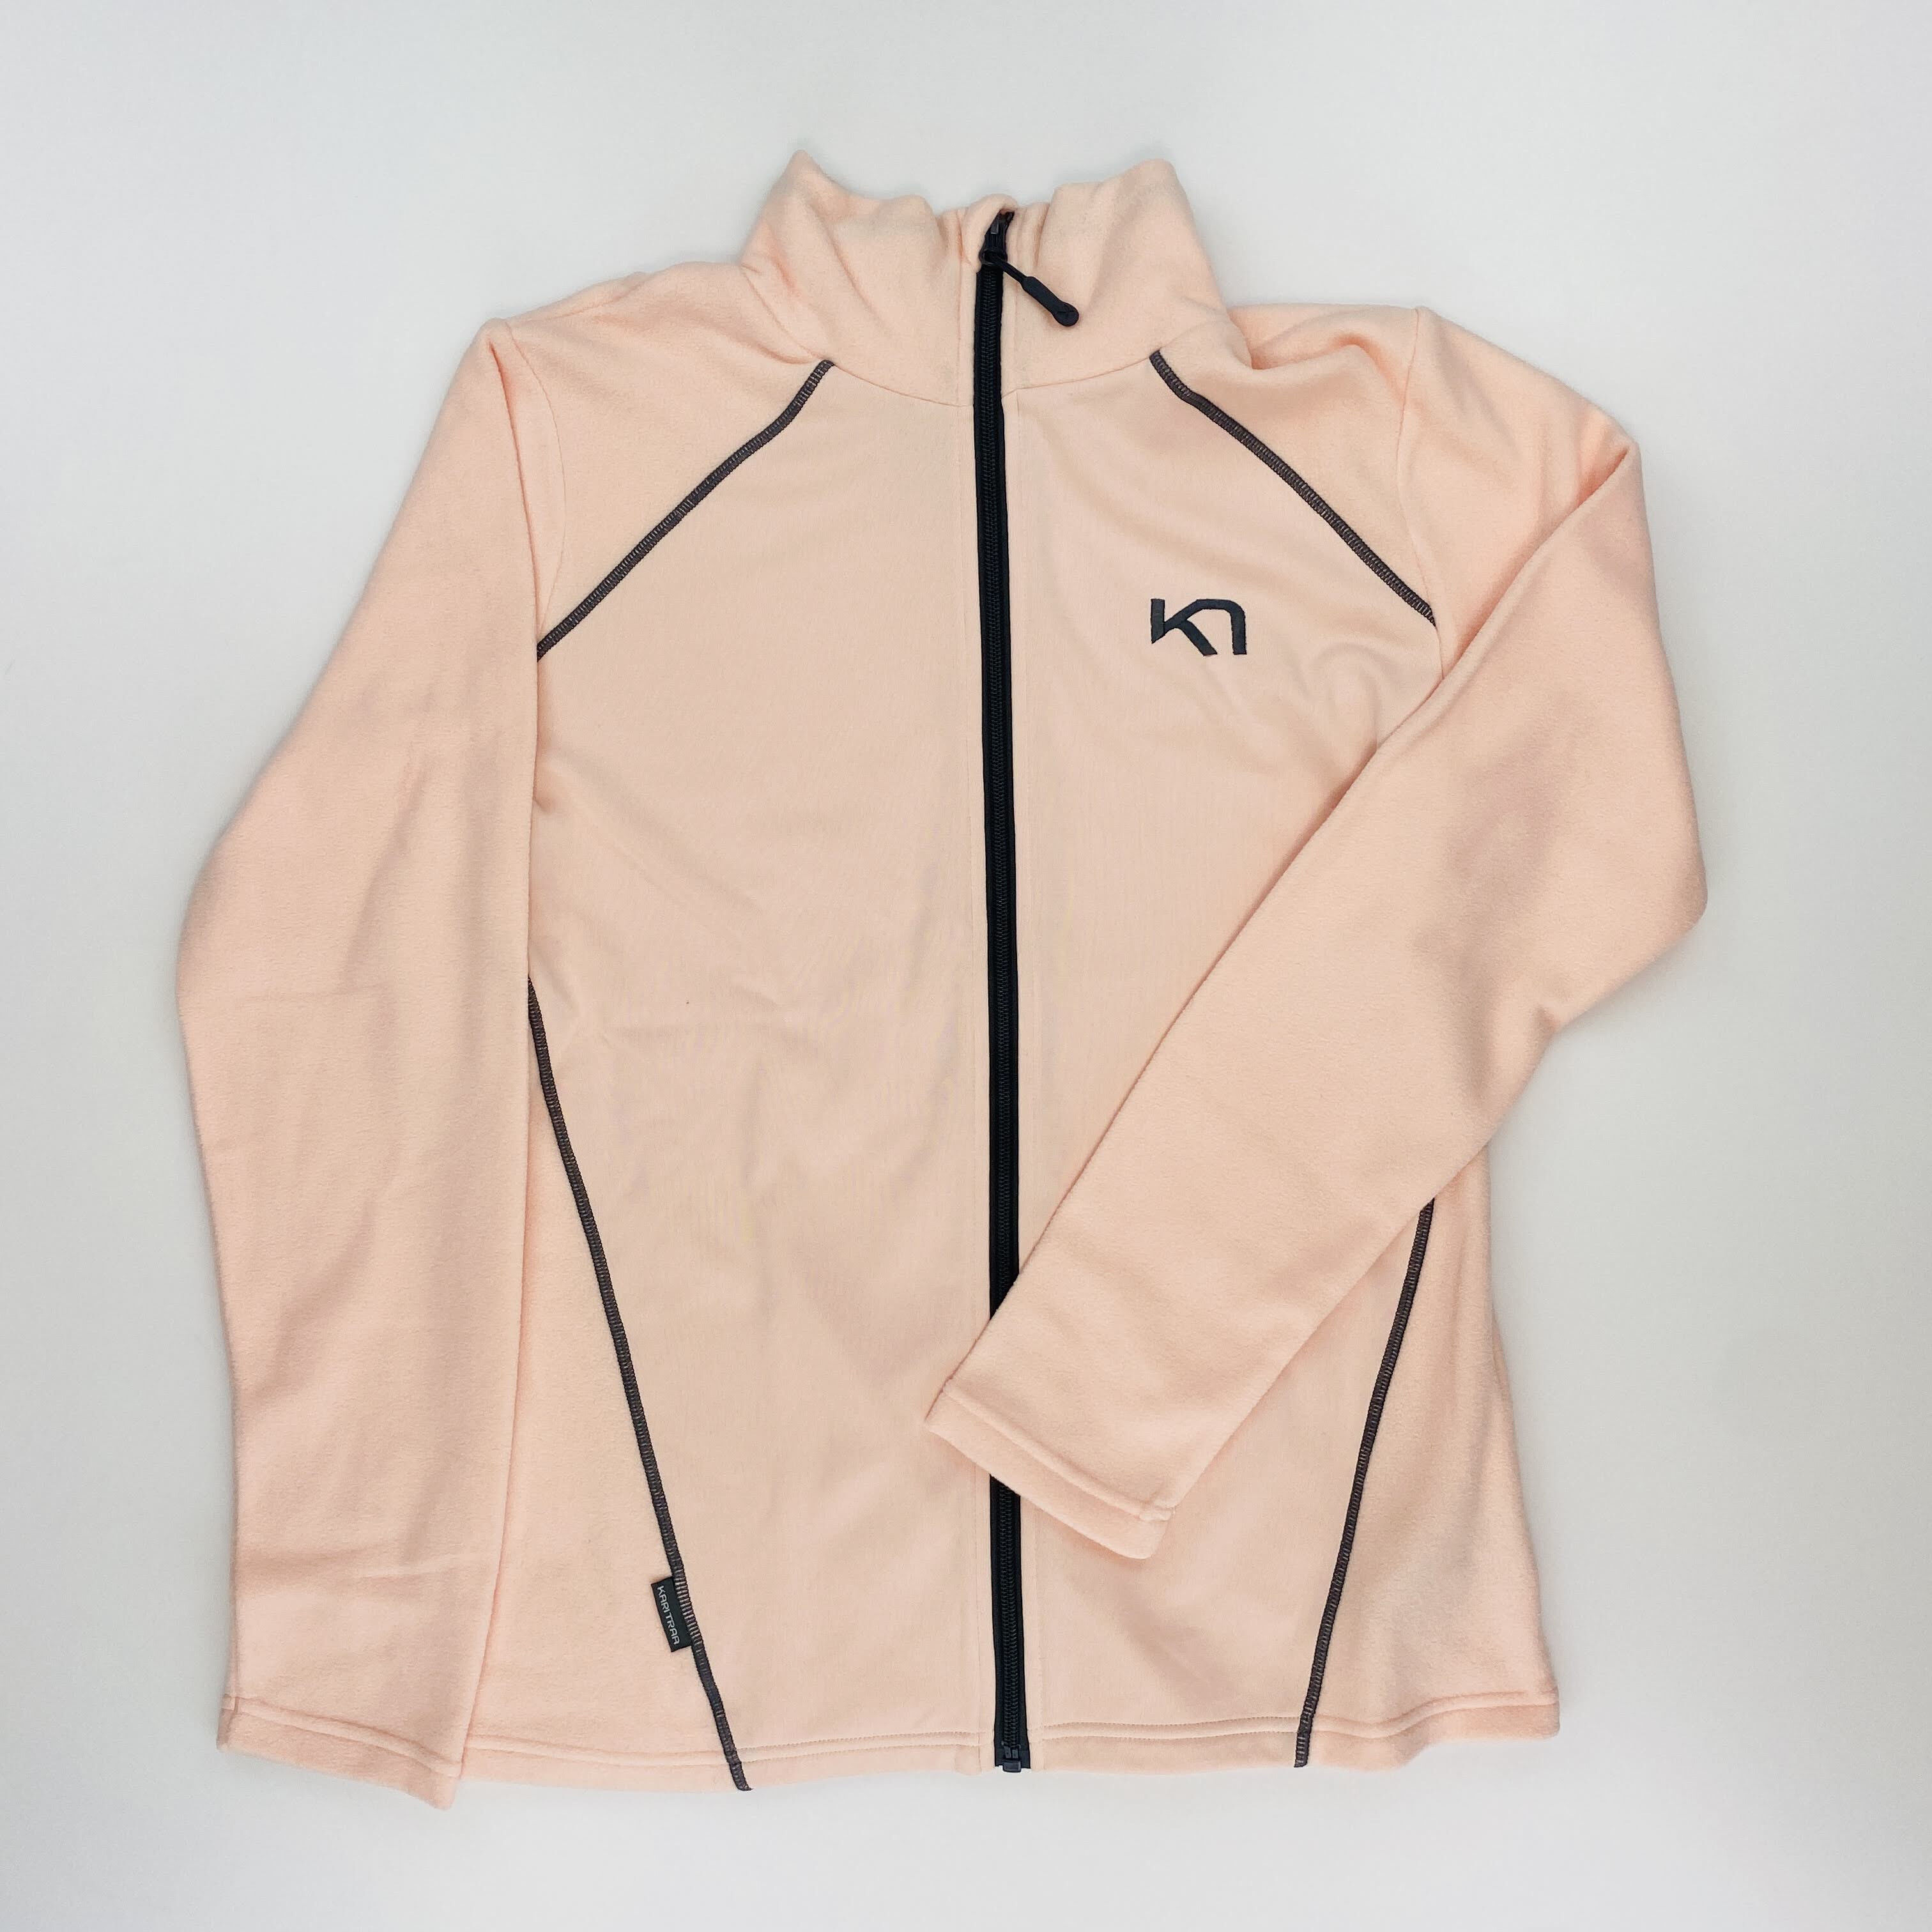 Kari Traa Kari F/Z Fleece - Second Hand Fleece jacket - Women's - Pink - M | Hardloop